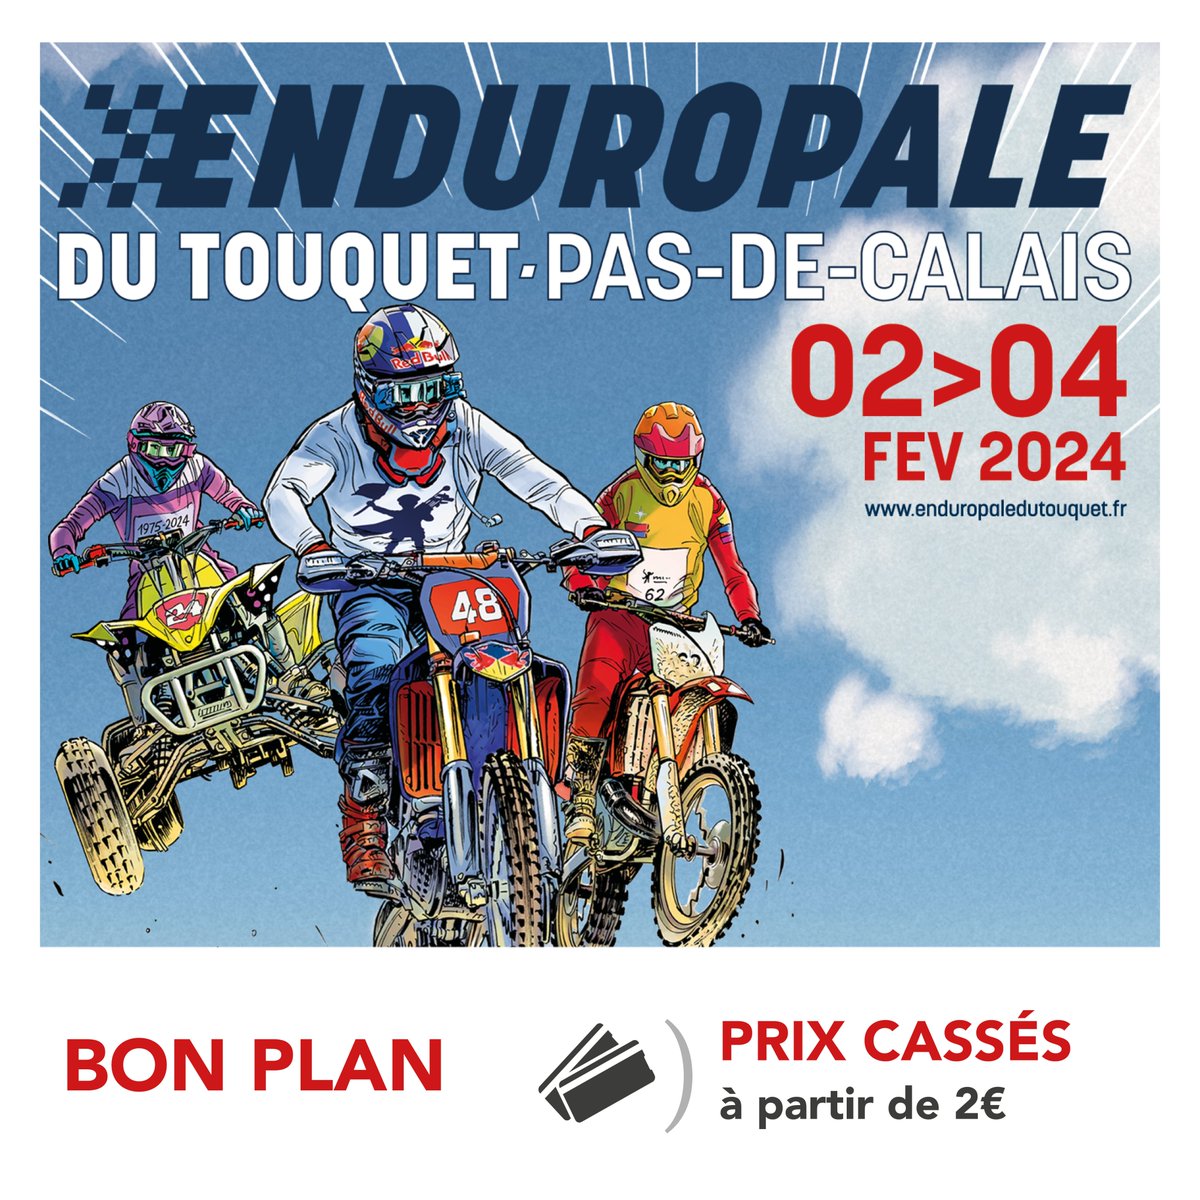 🚆 TER Hauts-de-France vous accompagne du 2 au 4 février à l'@Enduropaleoffic ! 🏍 ▶ Profitez des billets TER à 2, 5, 10, 15 ou 20 € en fonction de la distance parcourue, au départ de toutes les gares des Hauts-de-France vers Étaples-Le-Touquet. 👉 urlz.fr/pljT